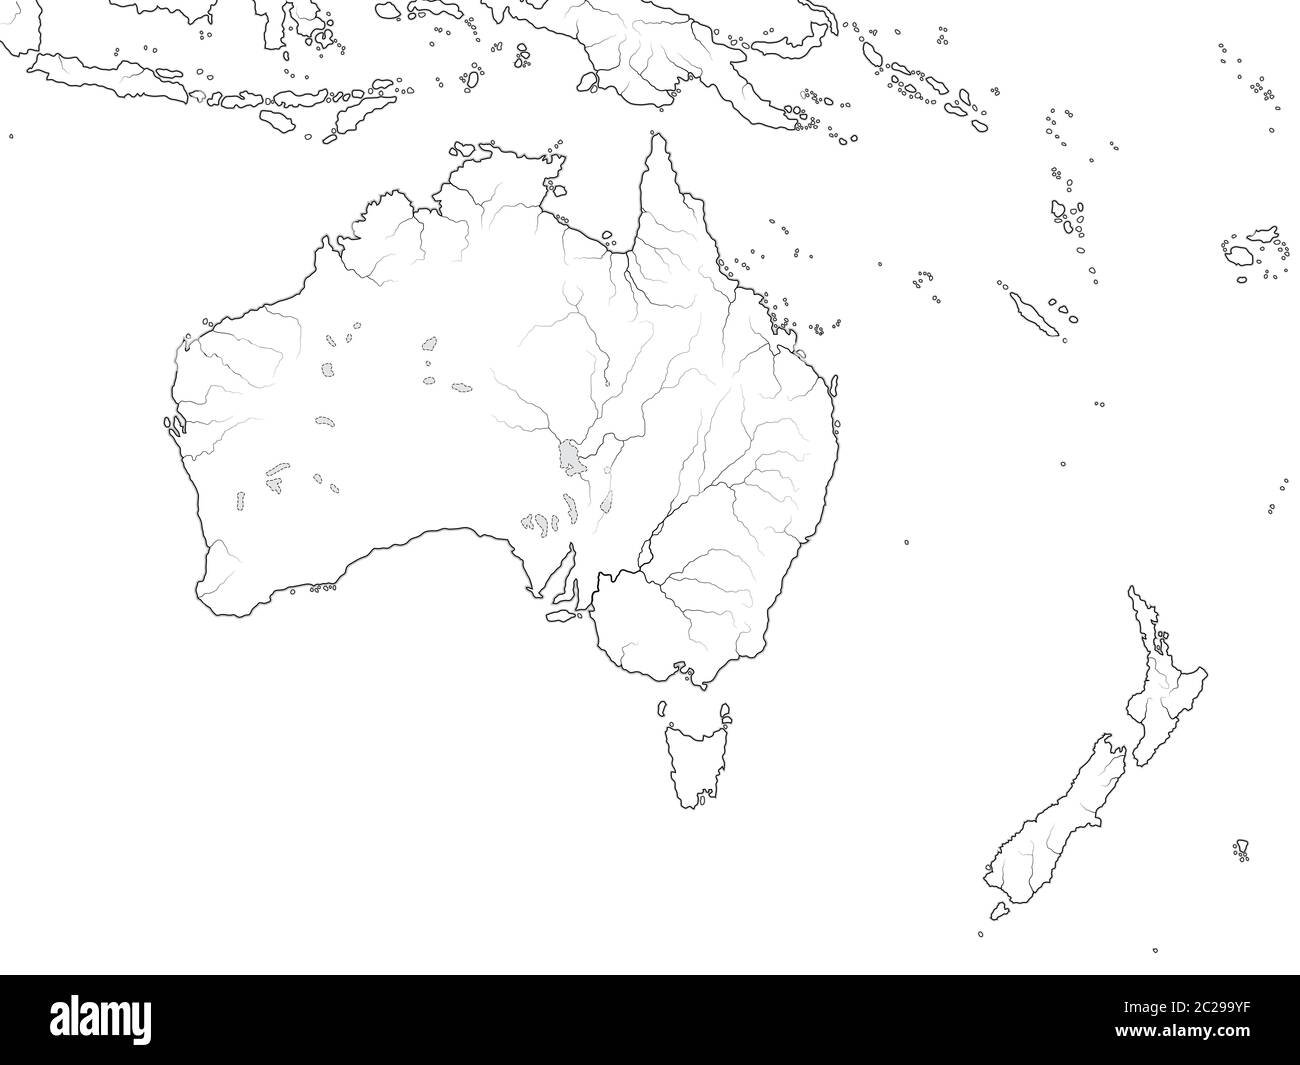 Mappa mondiale DEL CONTINENTE AUSTRALIANO: Australia, Nuova Zelanda, Oceania, Oceano Pacifico. Grafico geografico. Foto Stock